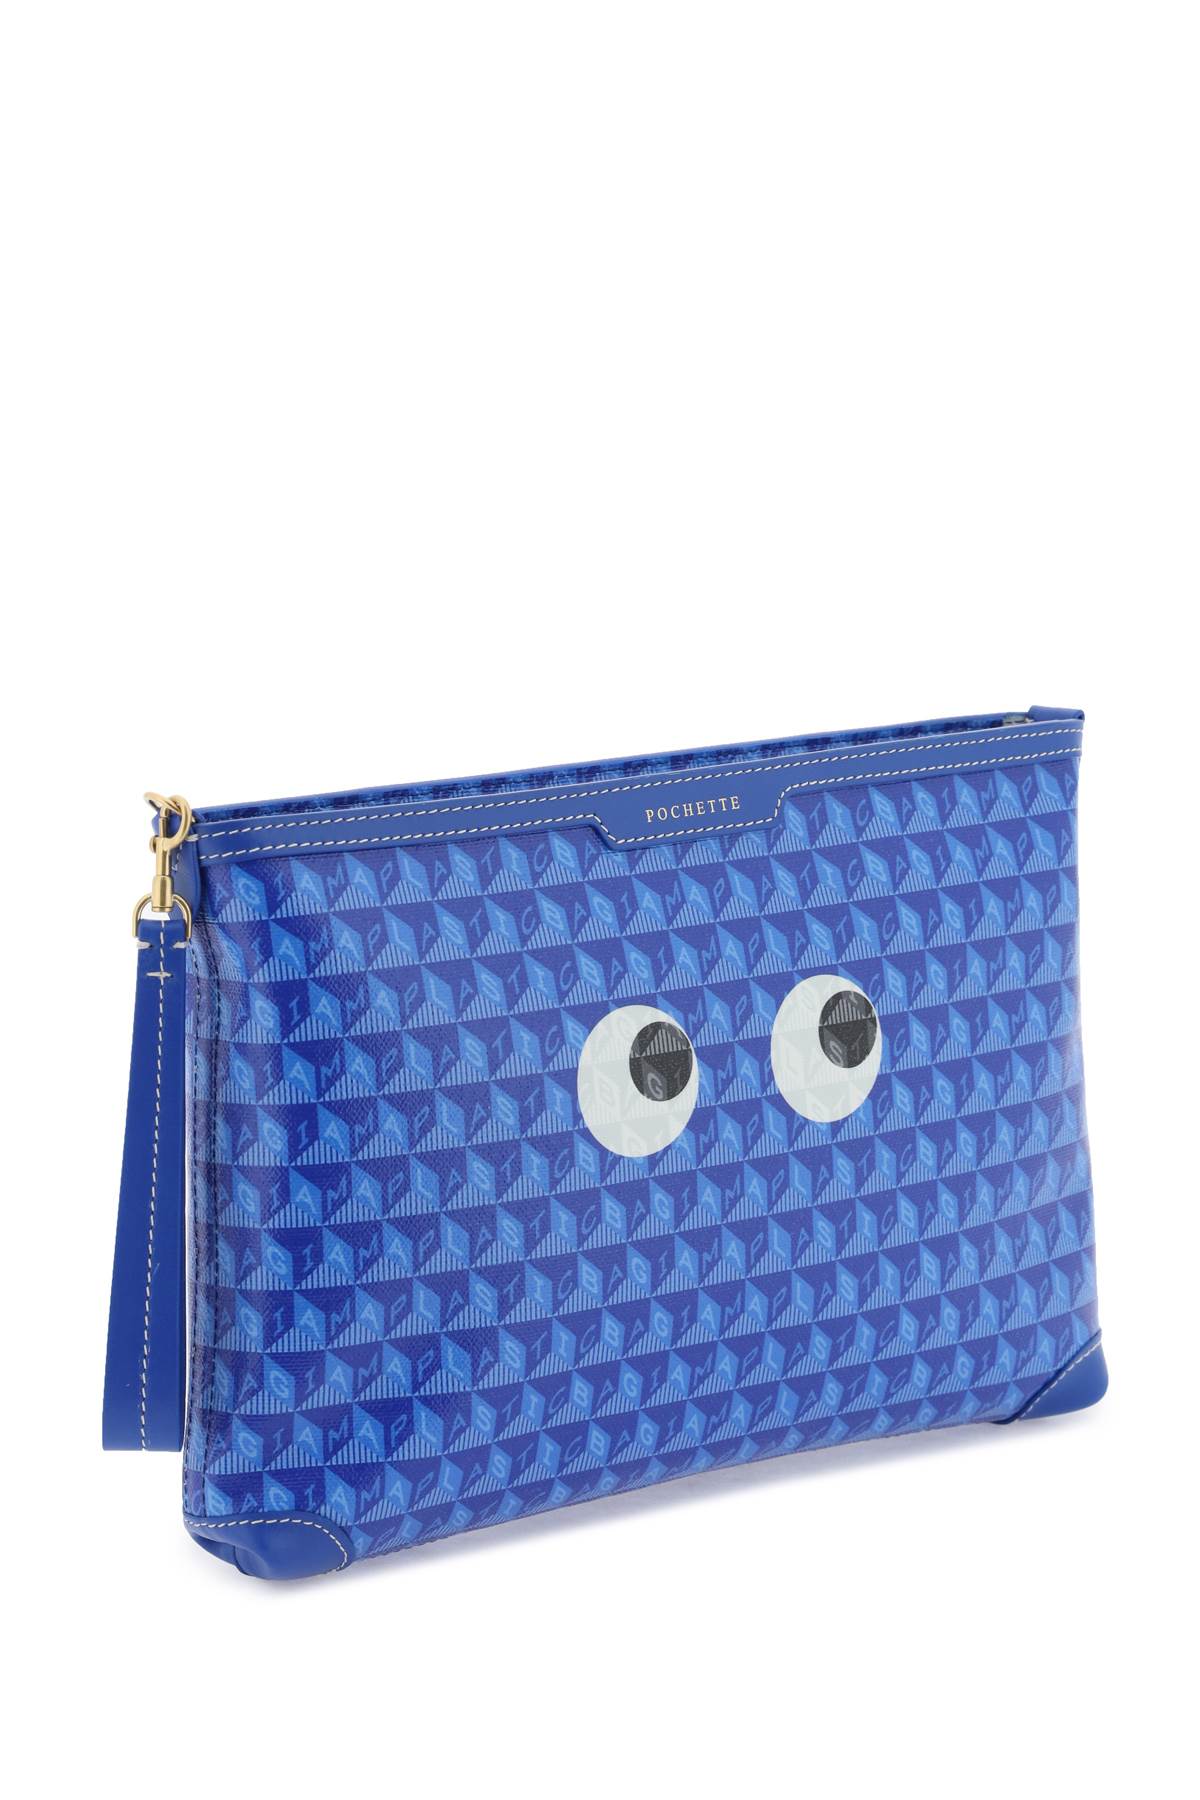 Anya Hindmarch I Am A Plastic Bag Eyes Pochette   Blu